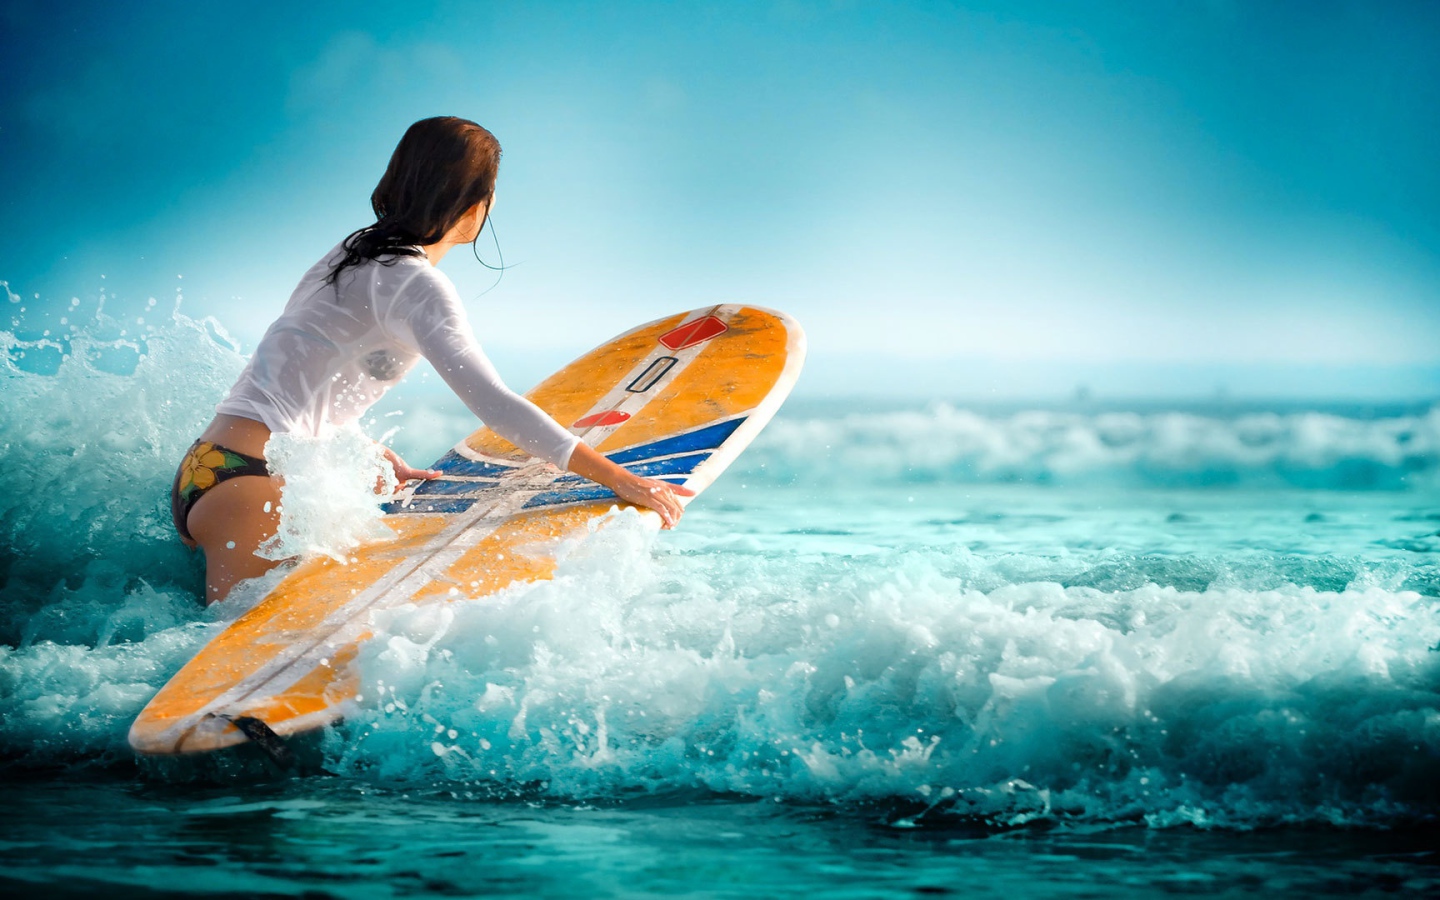 Красивая девушка занимается серфингом